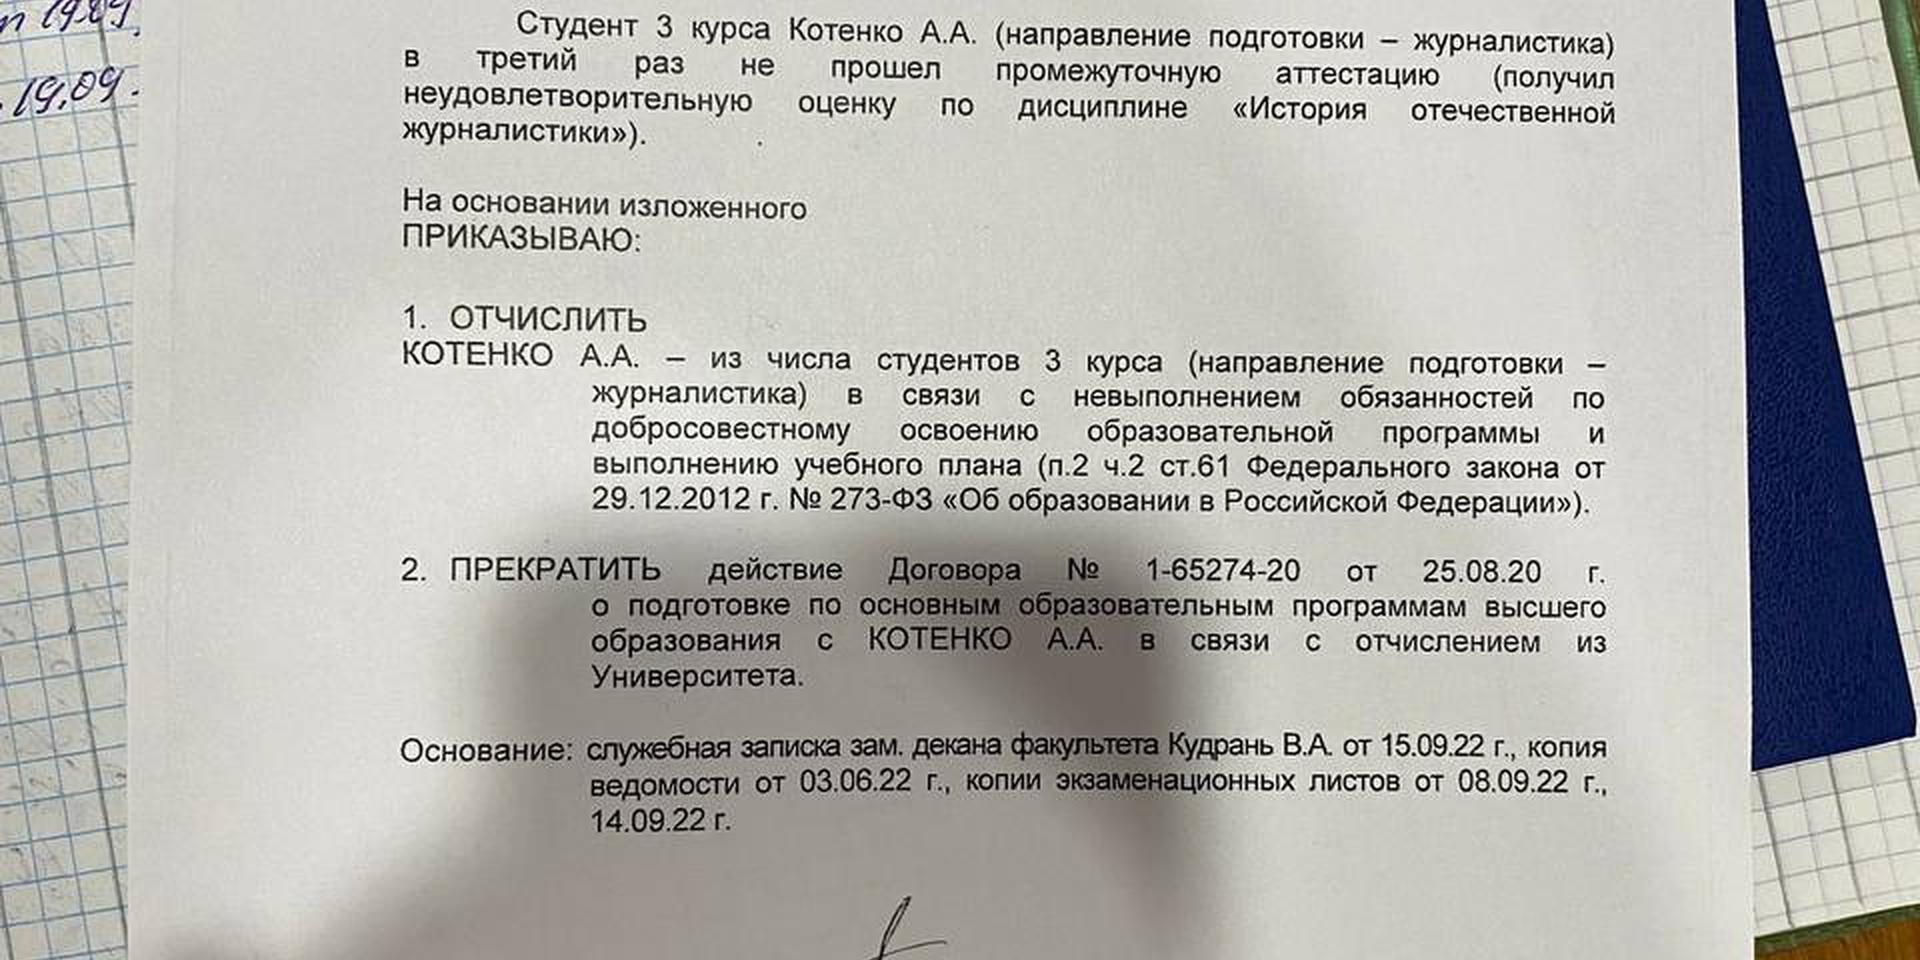 Питерского студента отчислили после антивоенных высказываний. Он отсудил за это свыше миллиона рублей